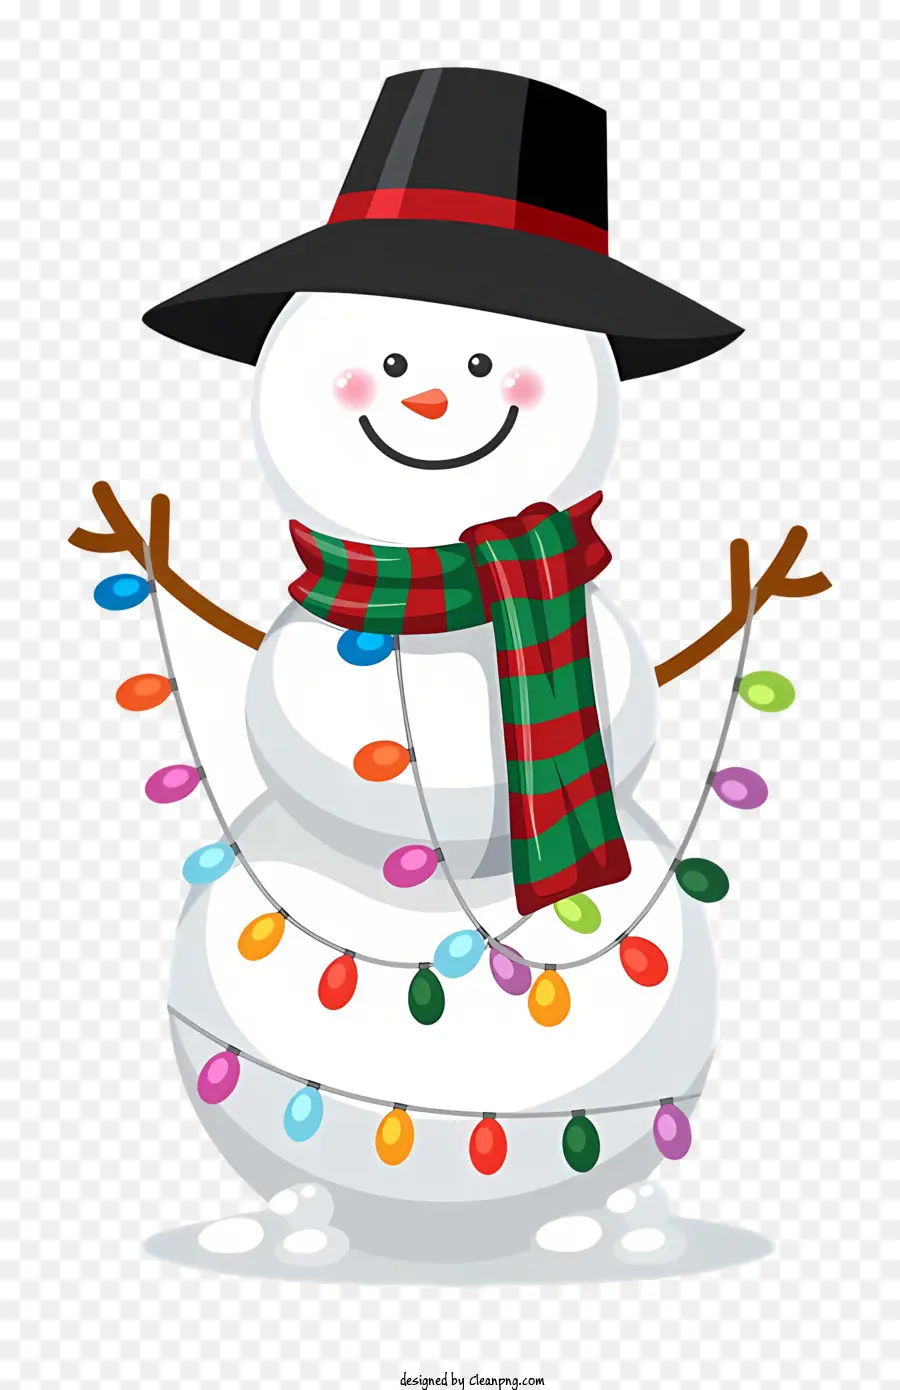 nền trắng - Người tuyết với mũ đen, khăn quàng cổ, ô và râu